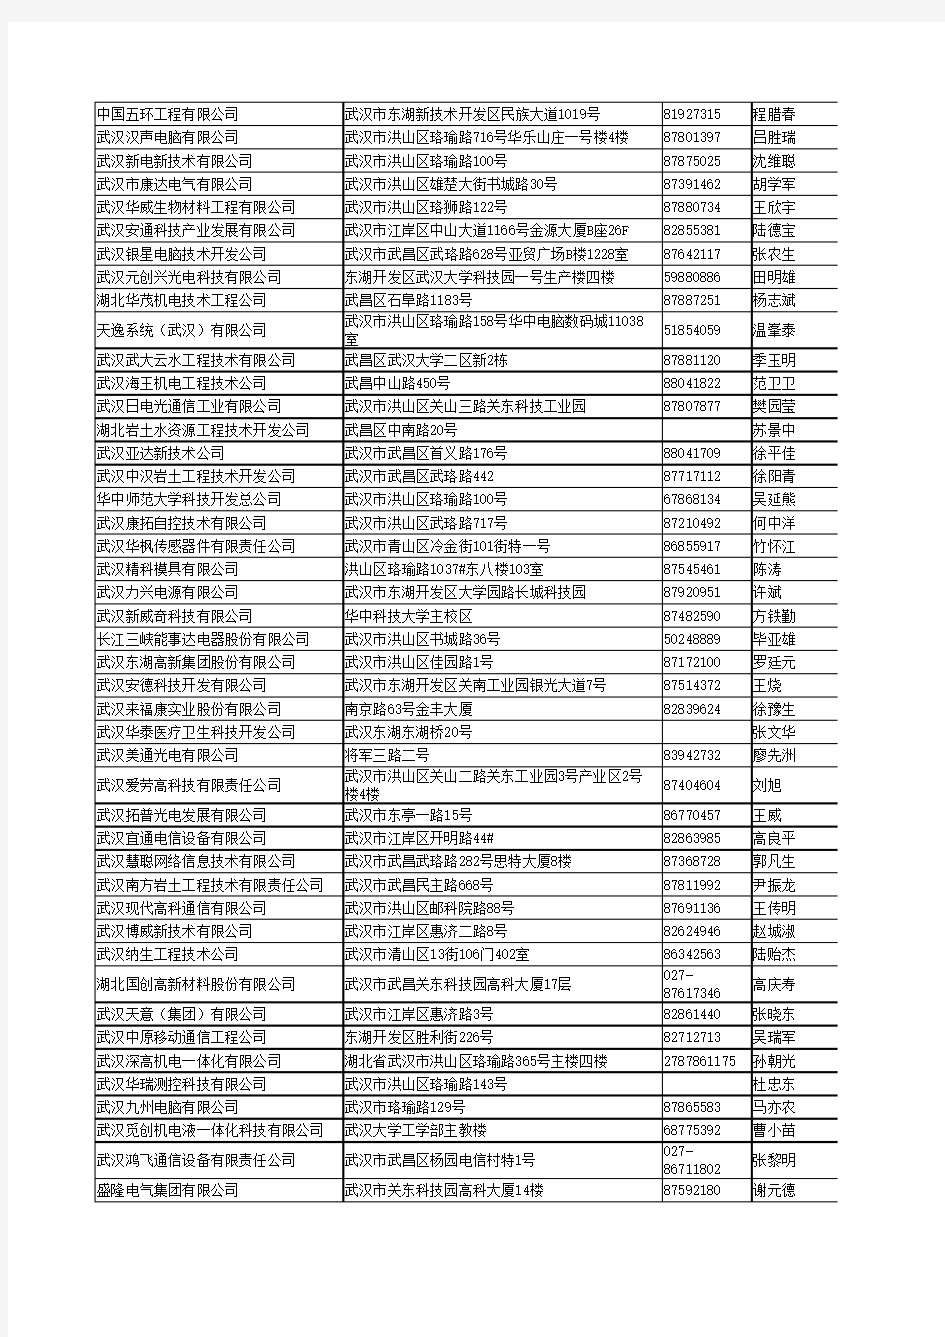 武汉东湖新技术开发区企业完整名录3450家